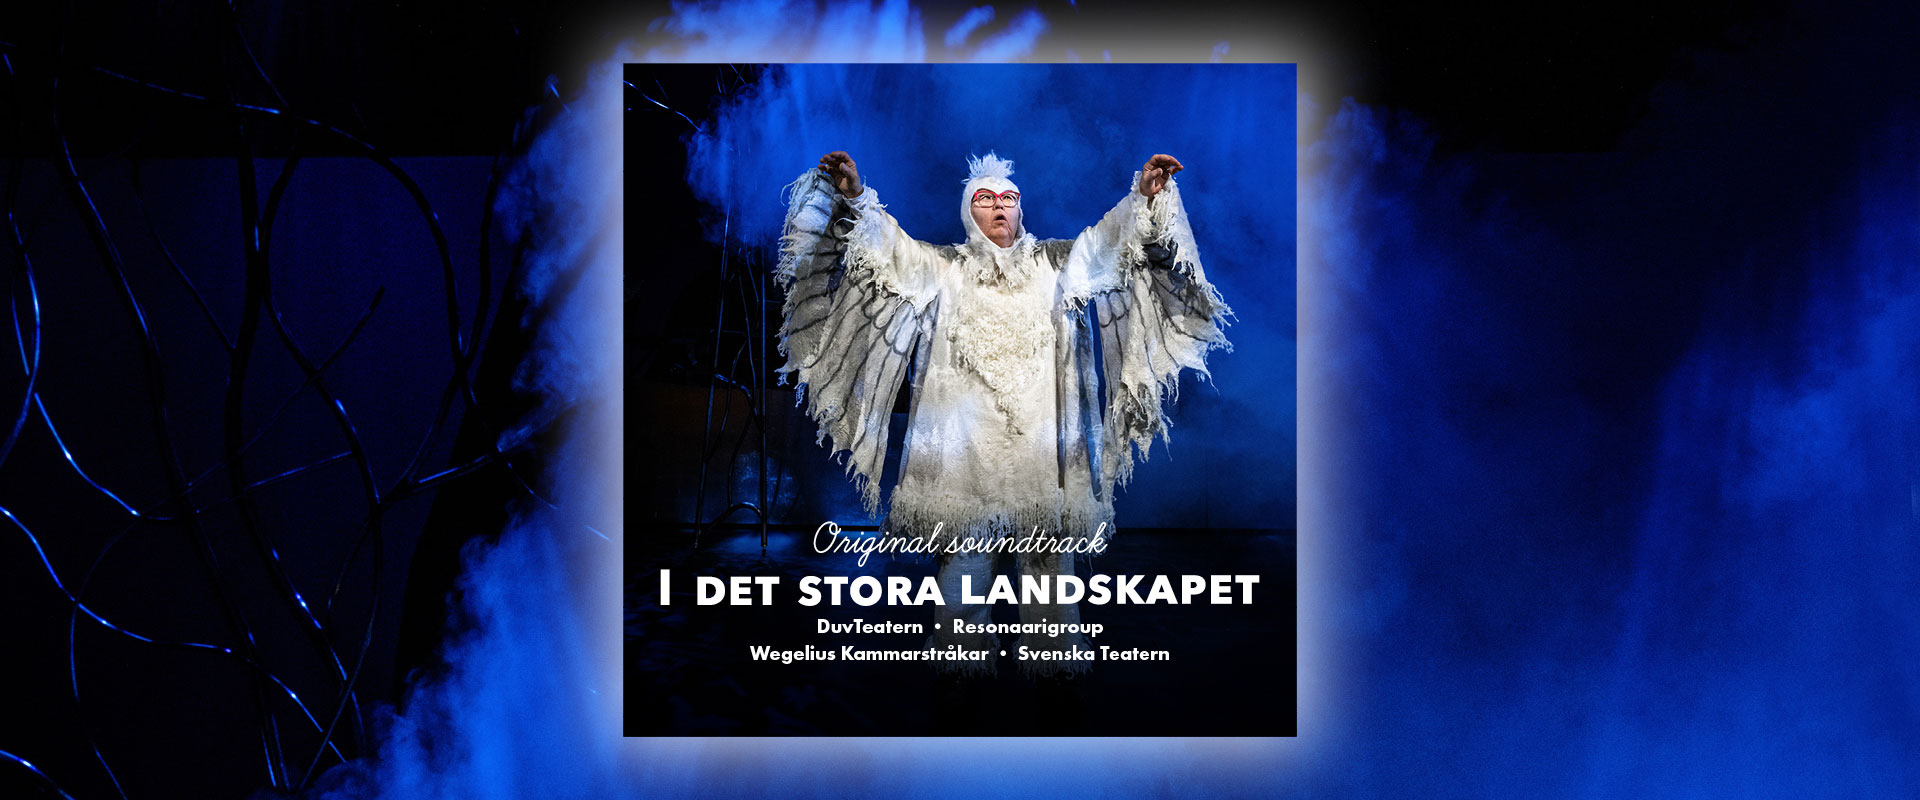 “I det stora landskapet - Original soundtrack”-albumi, jossa kuva esityksen pöllöstä (Irina von Martens). Tausta on dramaattisen sininen ja pöllöllä on siivet viistosti eteenpäin nostettuna kohti taivasta.